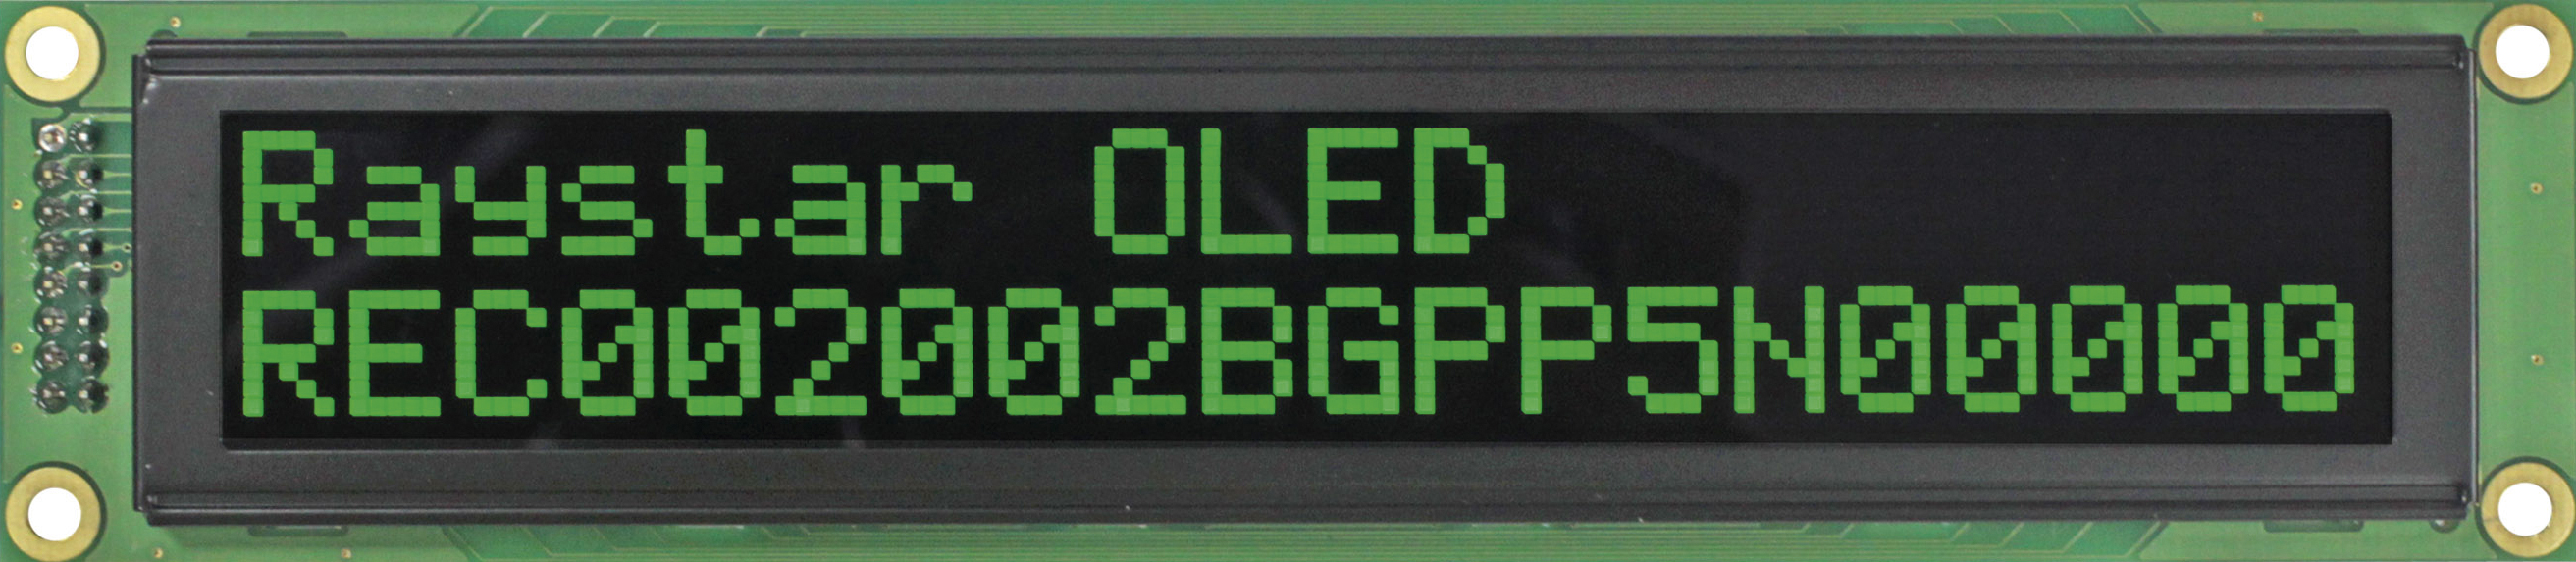 Текстовый OLED-дисплей REC002002B Raystar Optronics